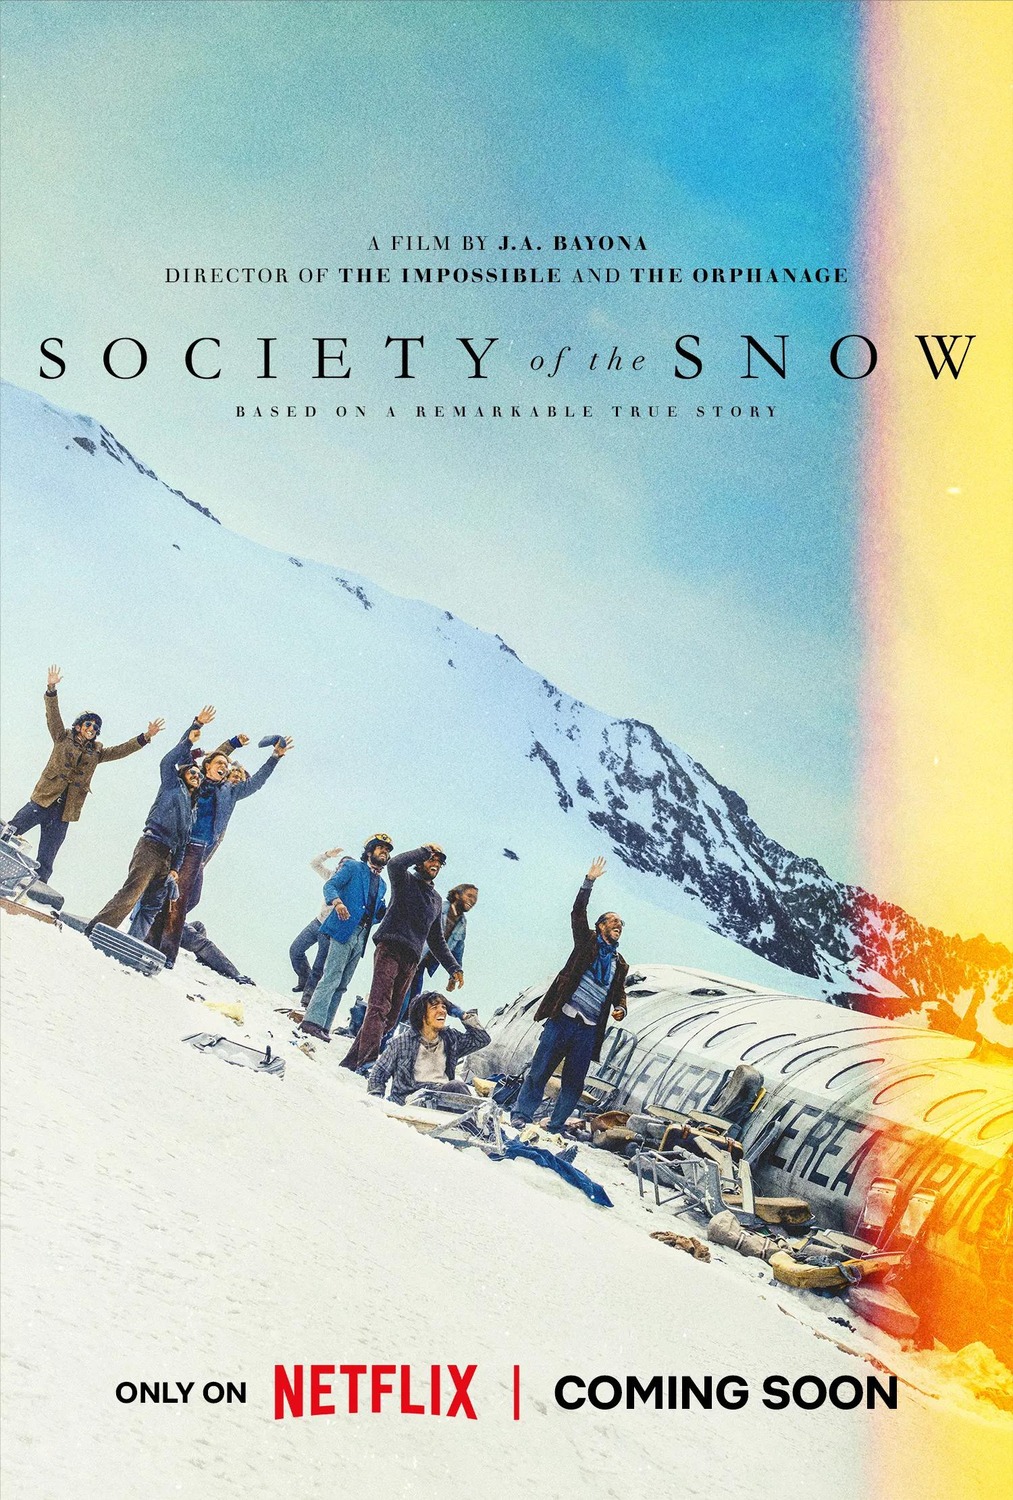 Extra Large Movie Poster Image for La sociedad de la nieve (#1 of 2)